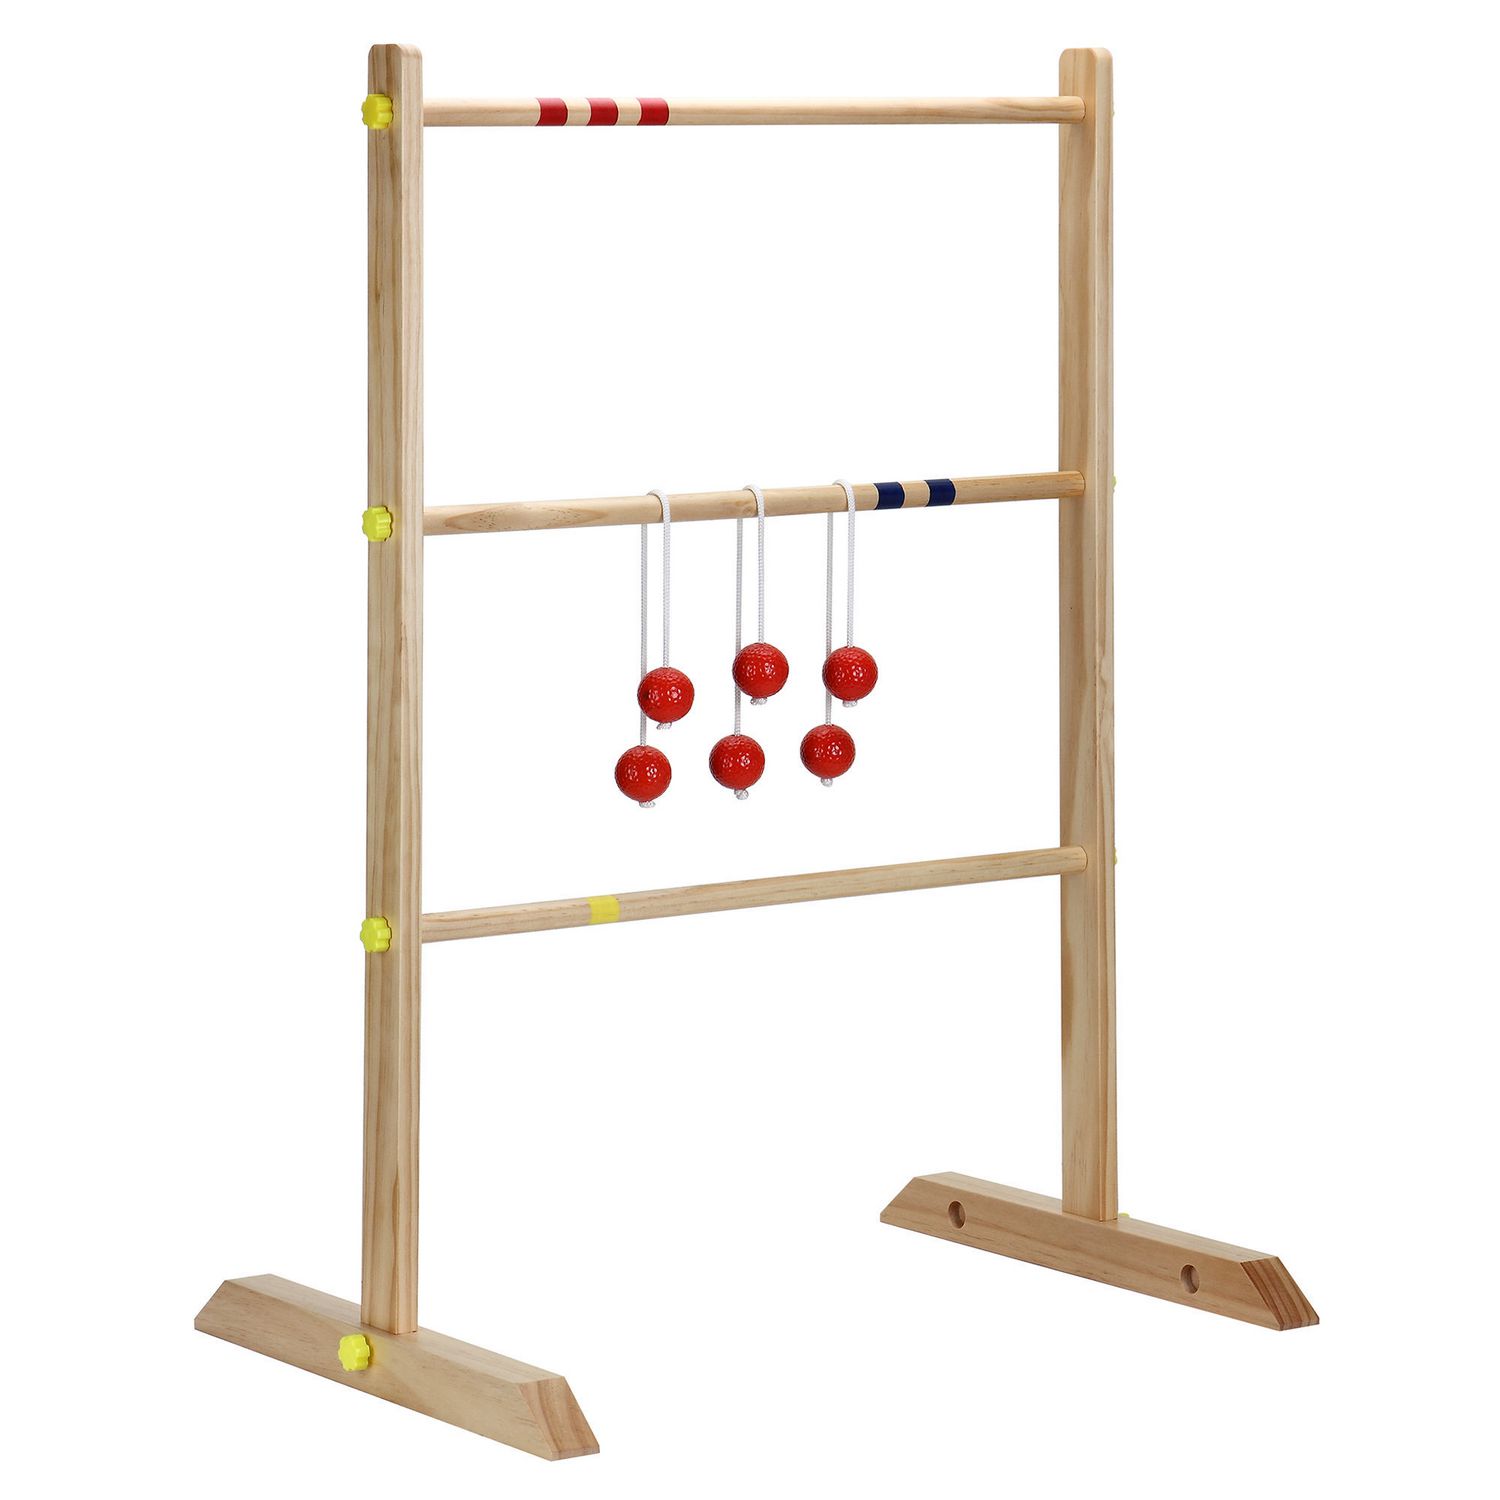 Lancer de Tac : accrochez vos boules sur l'échelle en bois